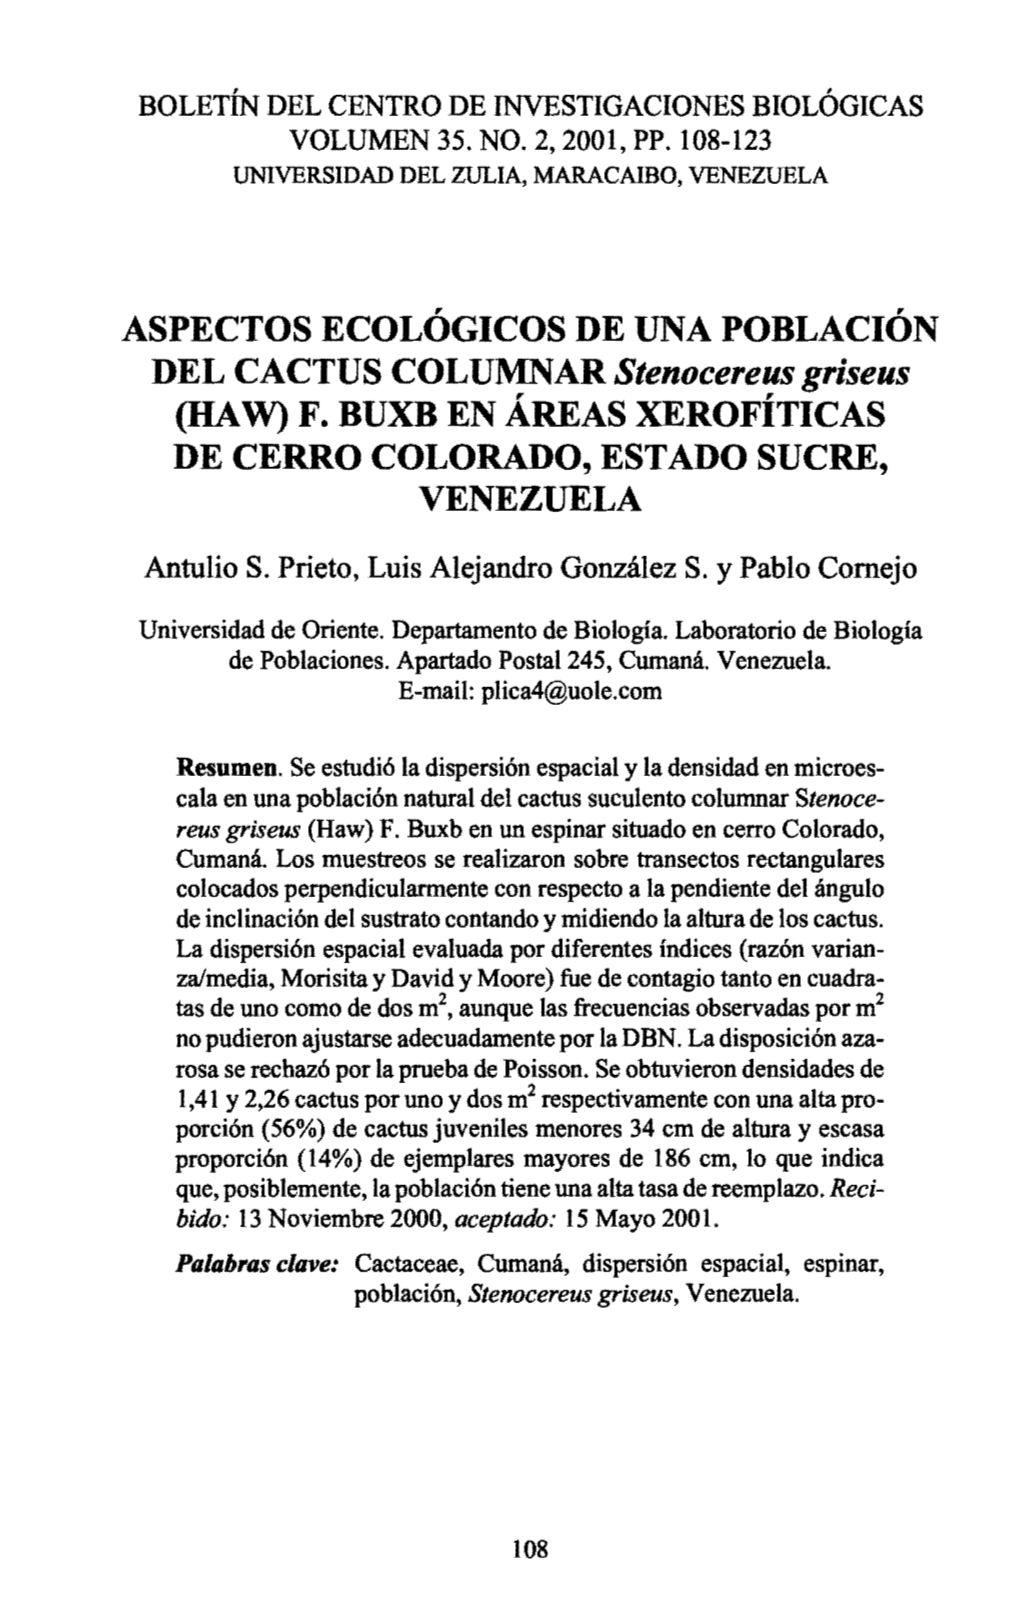 ASPECTOS ECOLÓGICOS DE UNA POBLACIÓN DEL CACTUS COLUMNAR Stenocereus Griseus (HAW) F